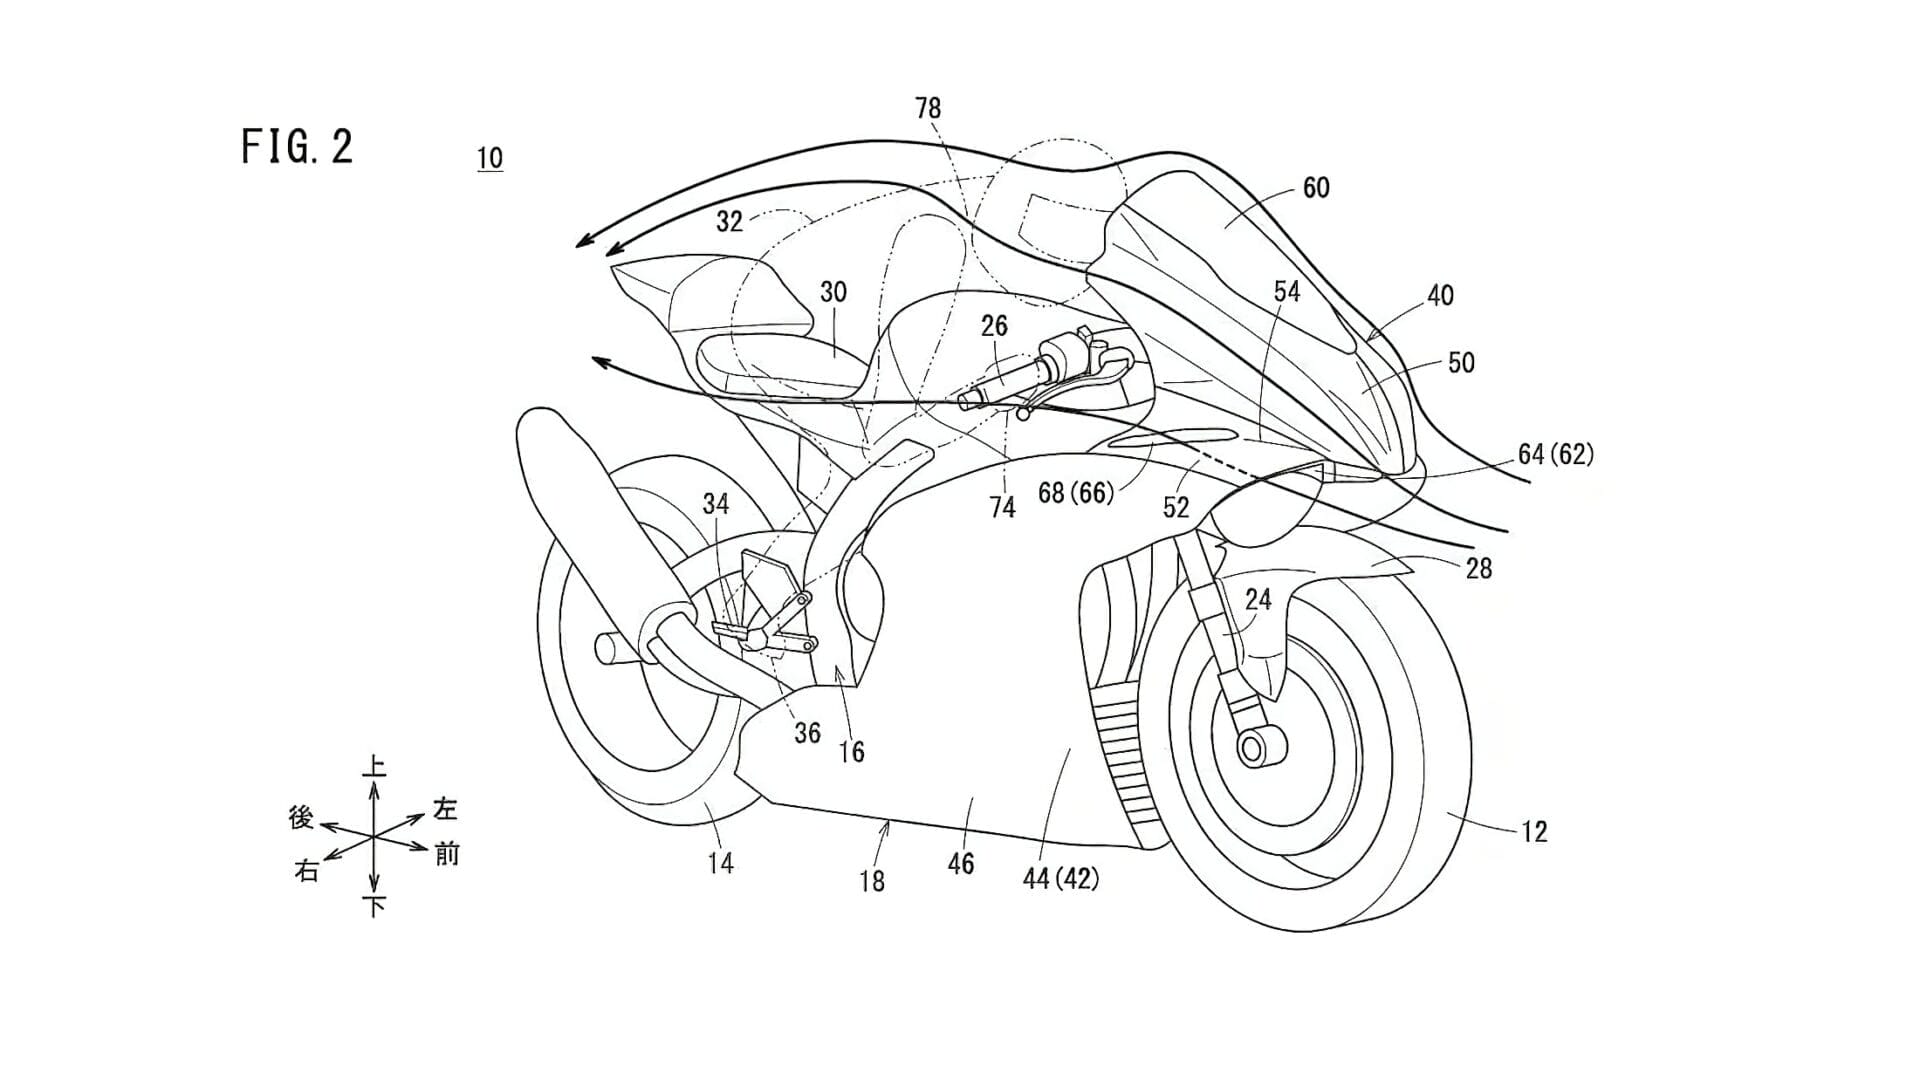 Hondas Patent-Ansatz: Neue Fireblade-Verkleidung kombiniert Aerodynamik und Design